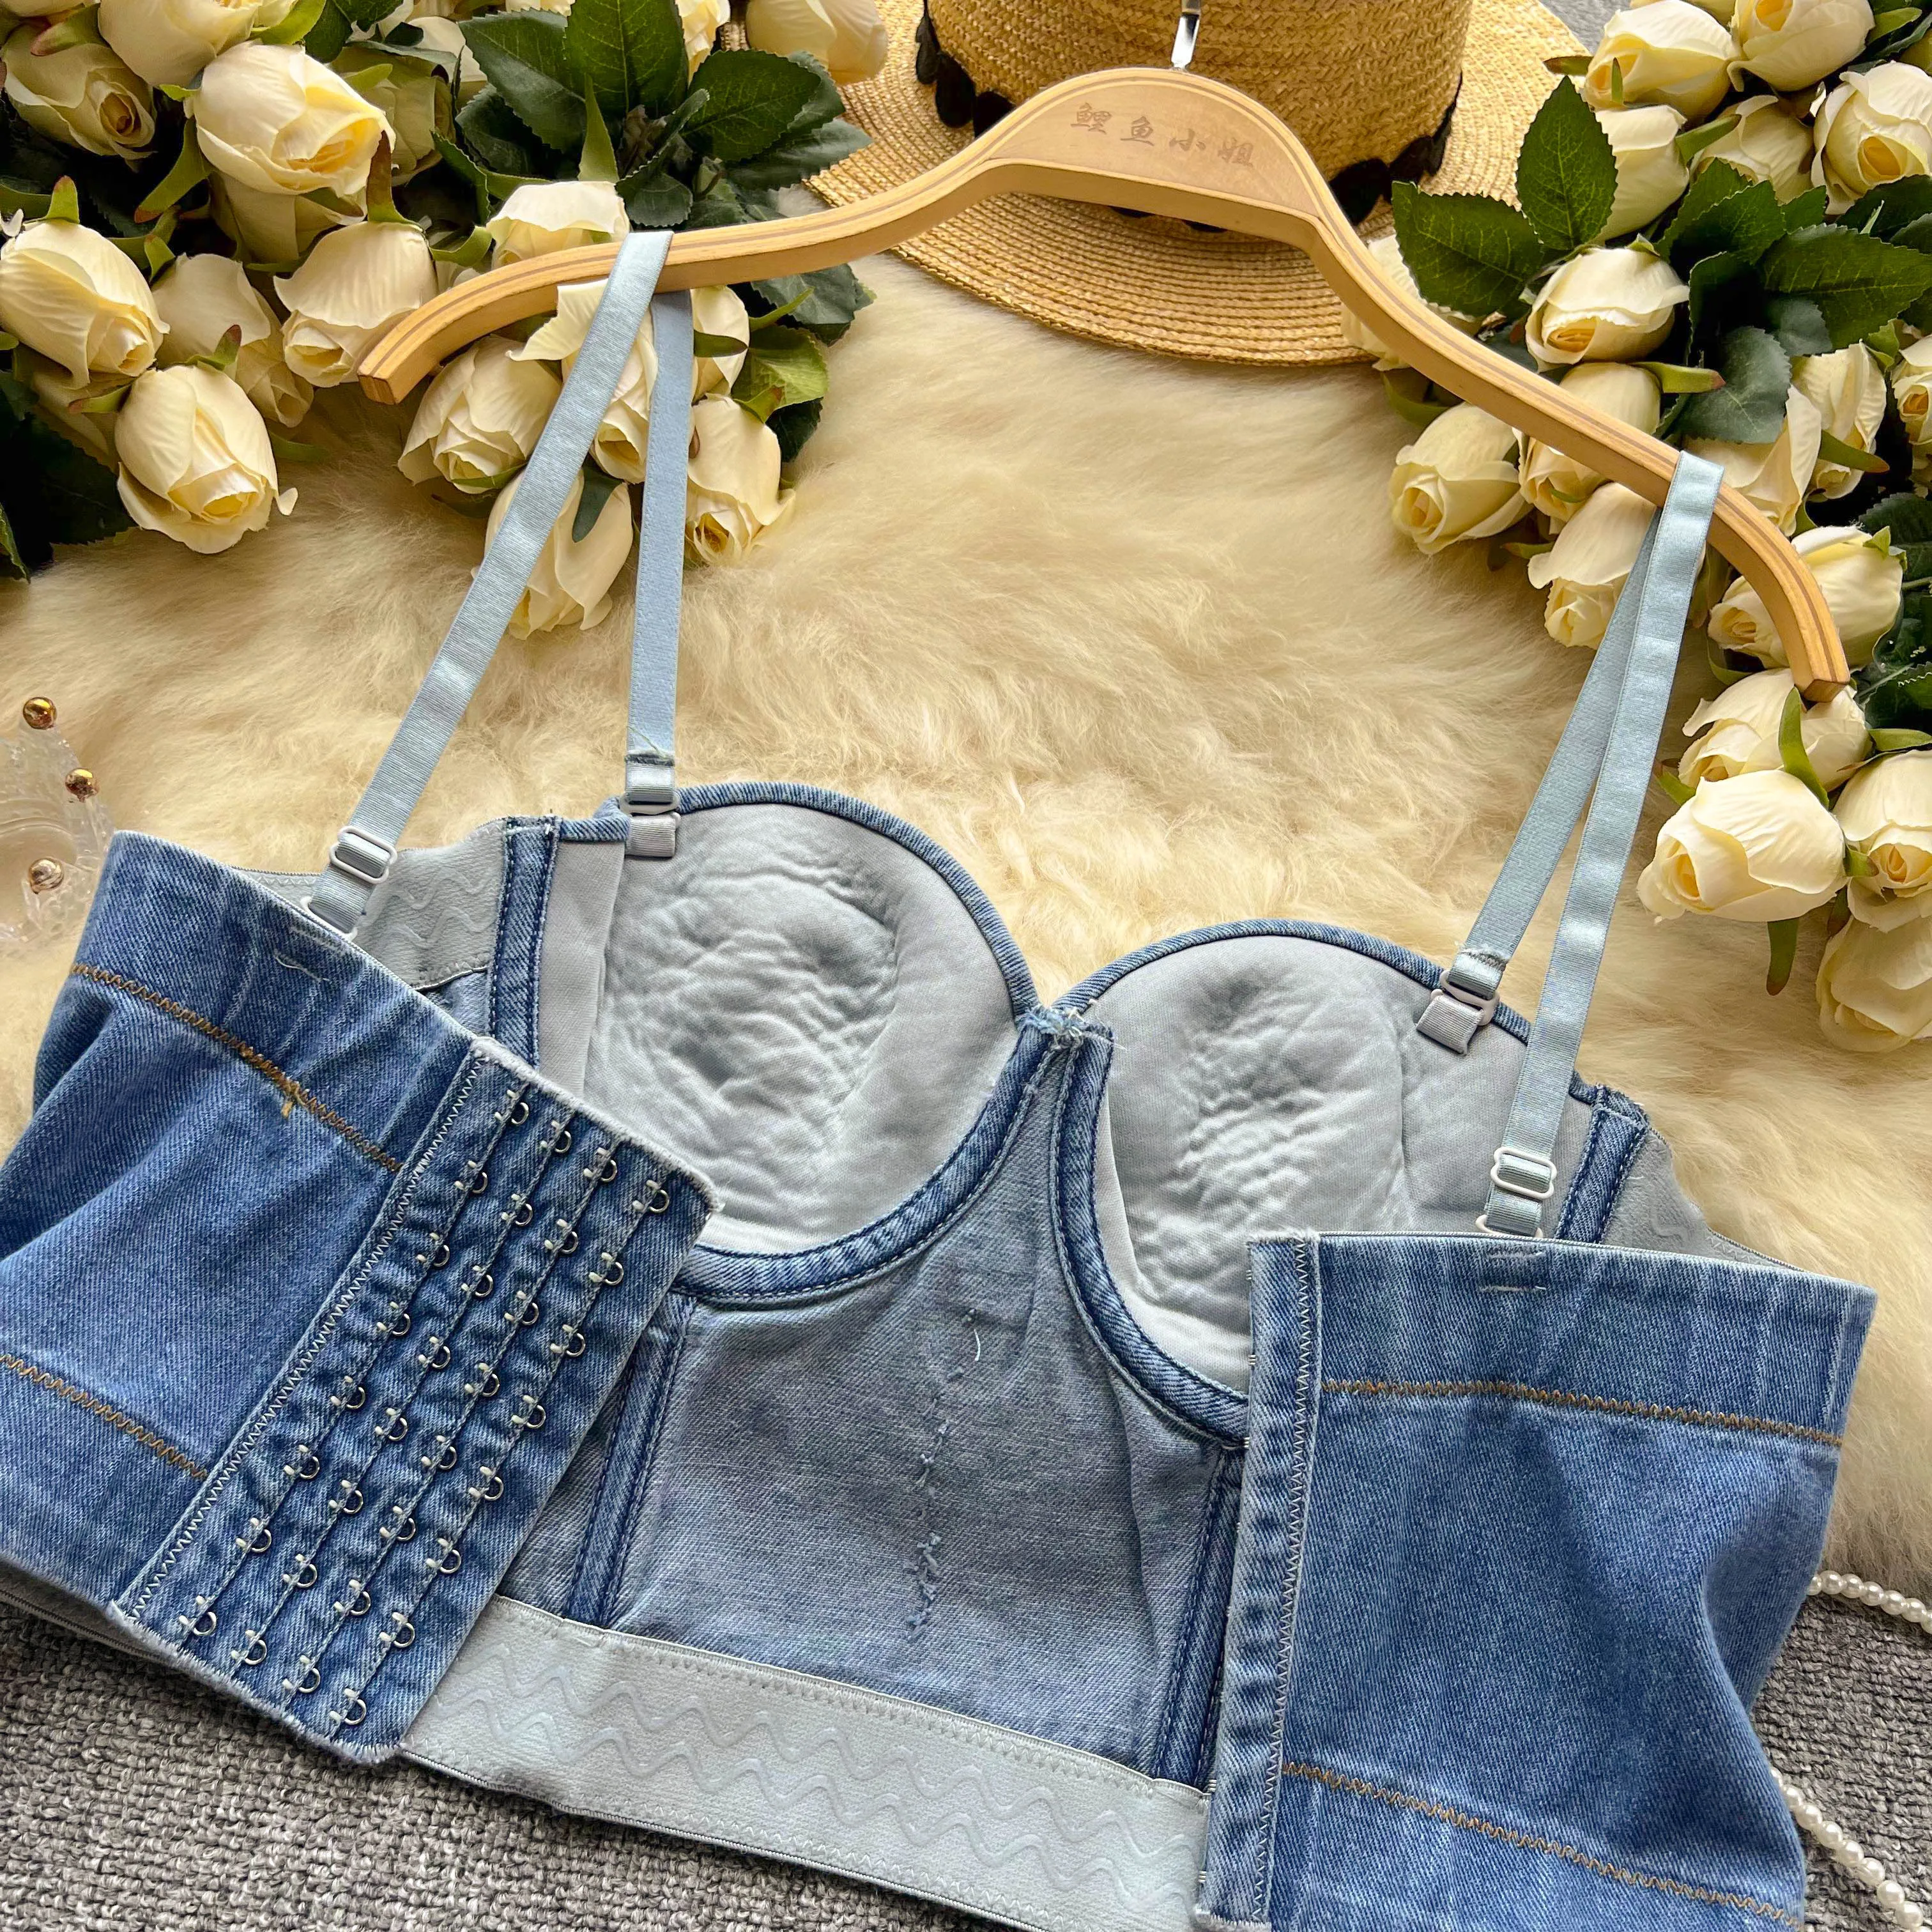 Сексуальные и уникальные маленькие МАЙКИ на подтяжках для женской верхней одежды, летняя подкладка, тяжелая джинсовая ткань с цепочкой, инкрустированная бриллиантами